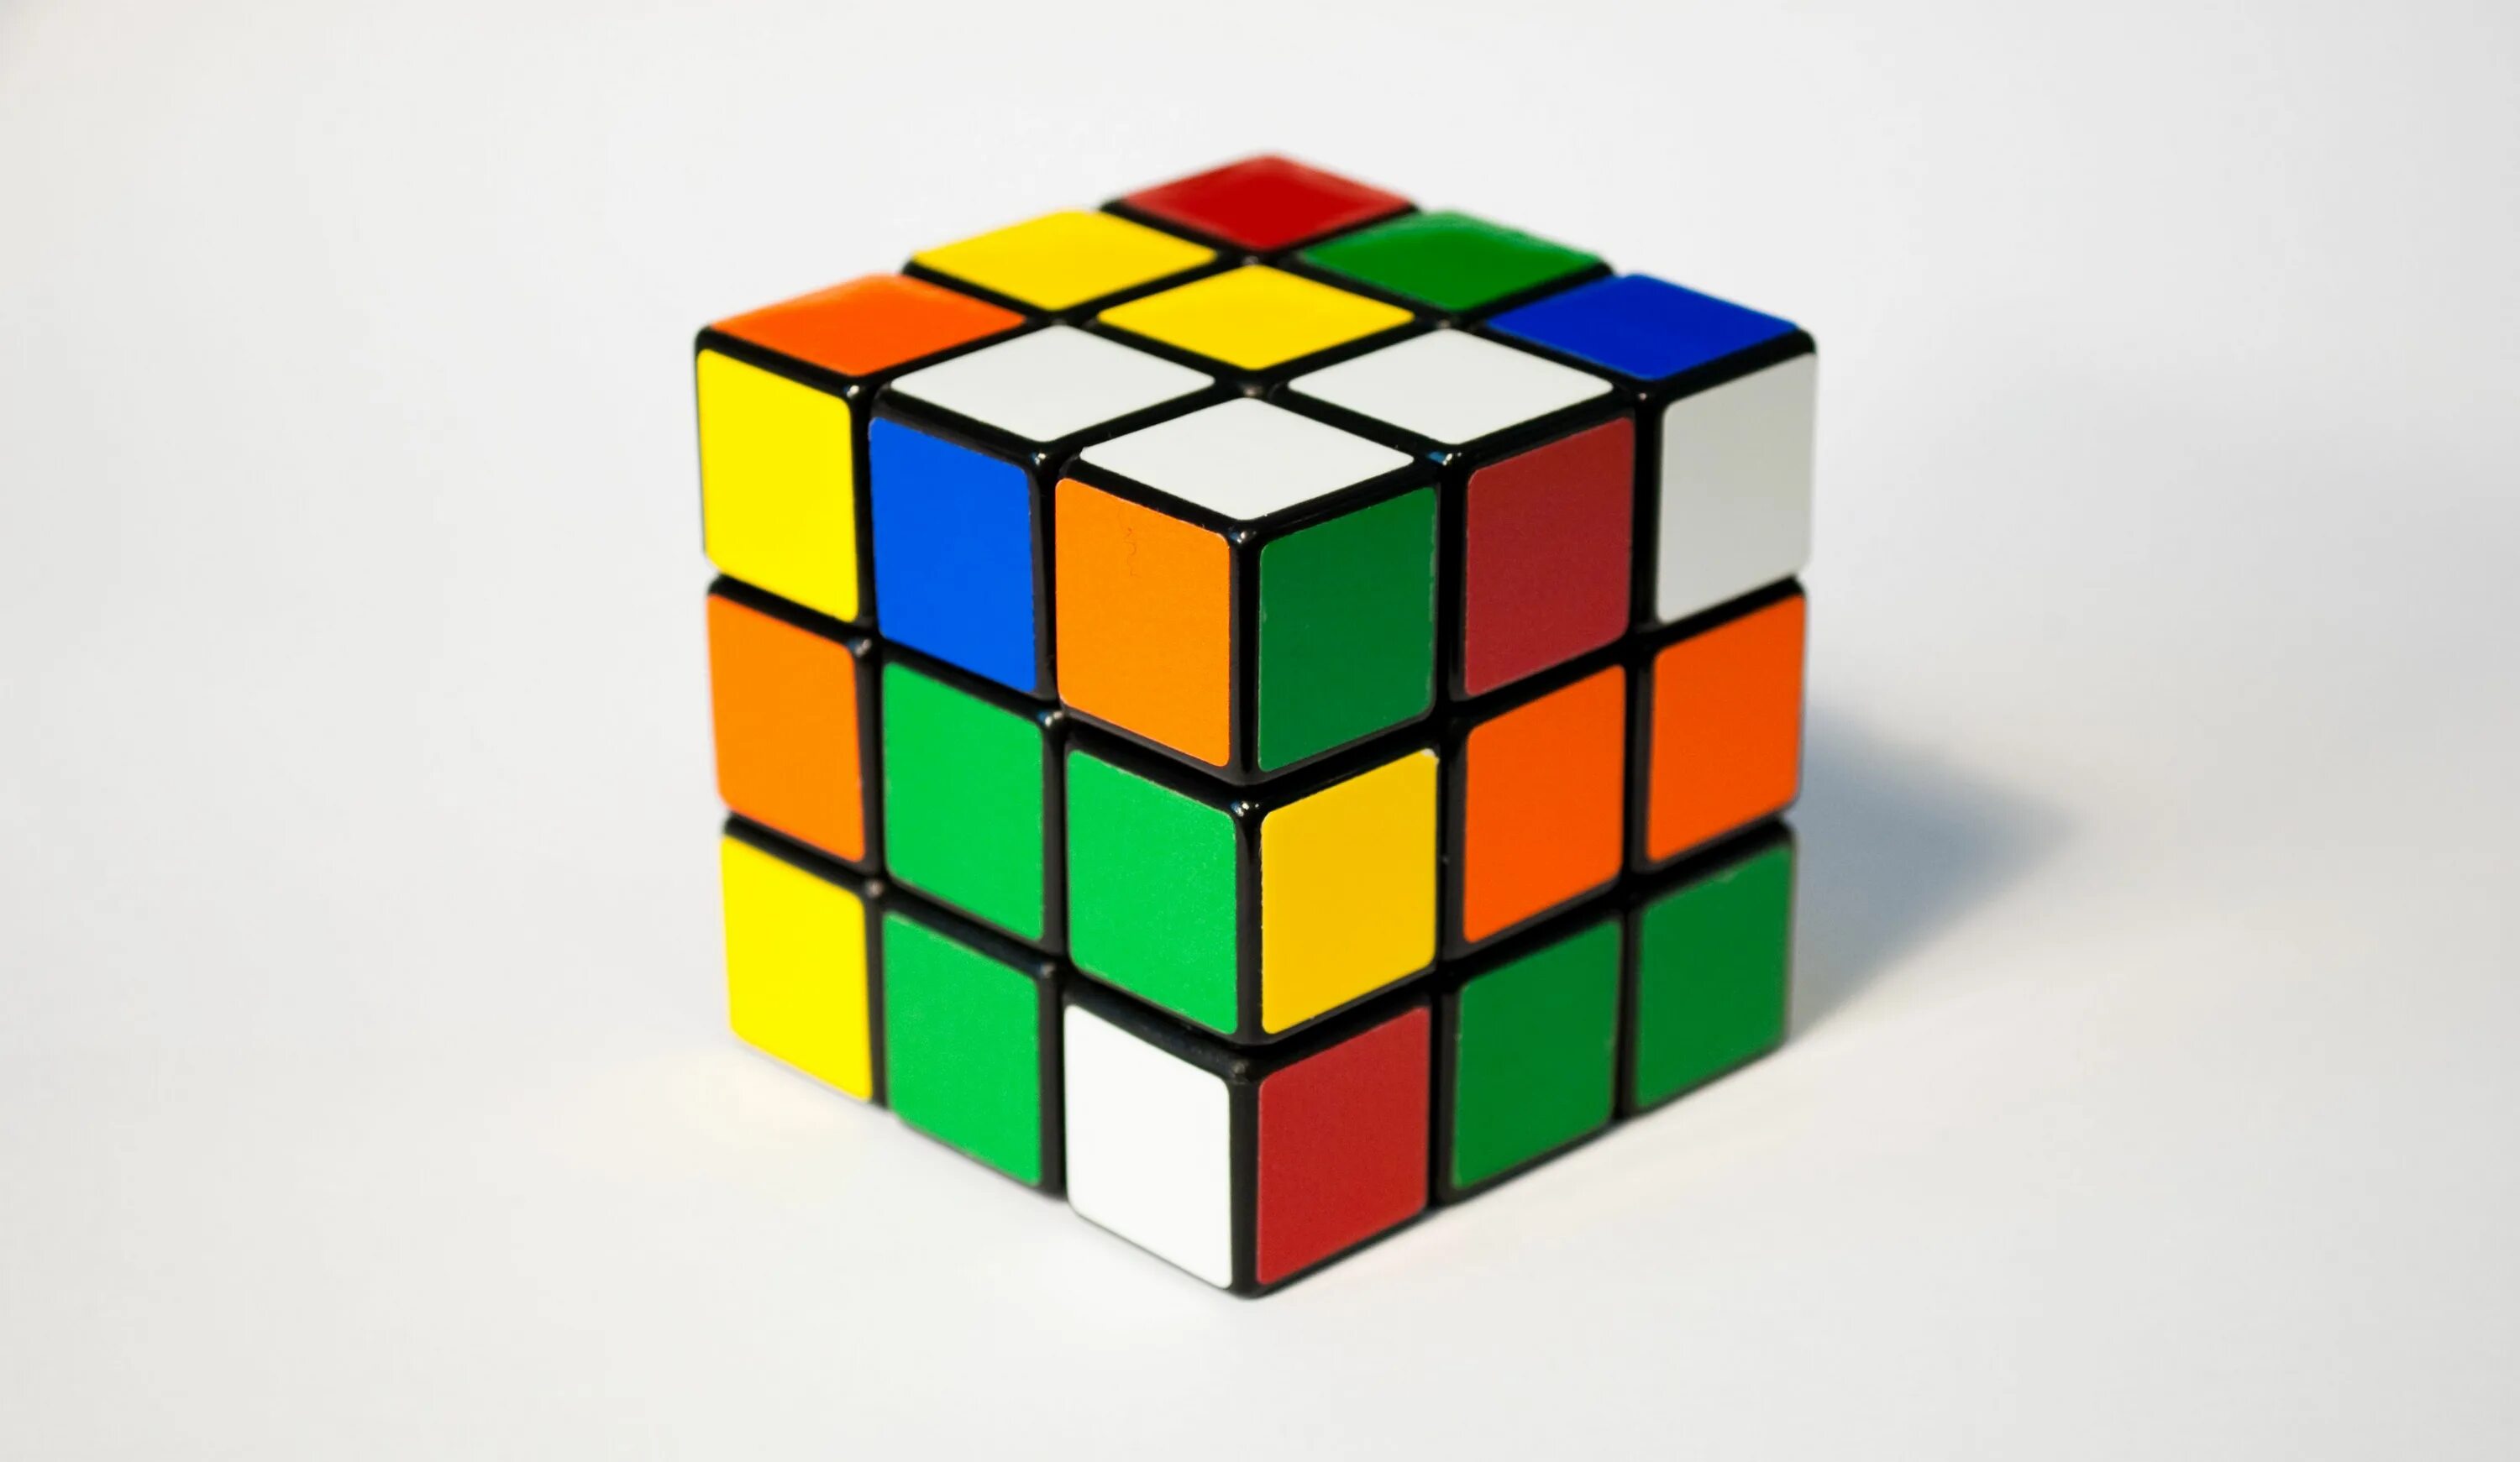 Кубик кубик раз два три. Кубик Рубика 3х3. Эрнё рубик. Кубик-Рубика 3х3 цвета сторон. 19 Мая кубик Рубика.